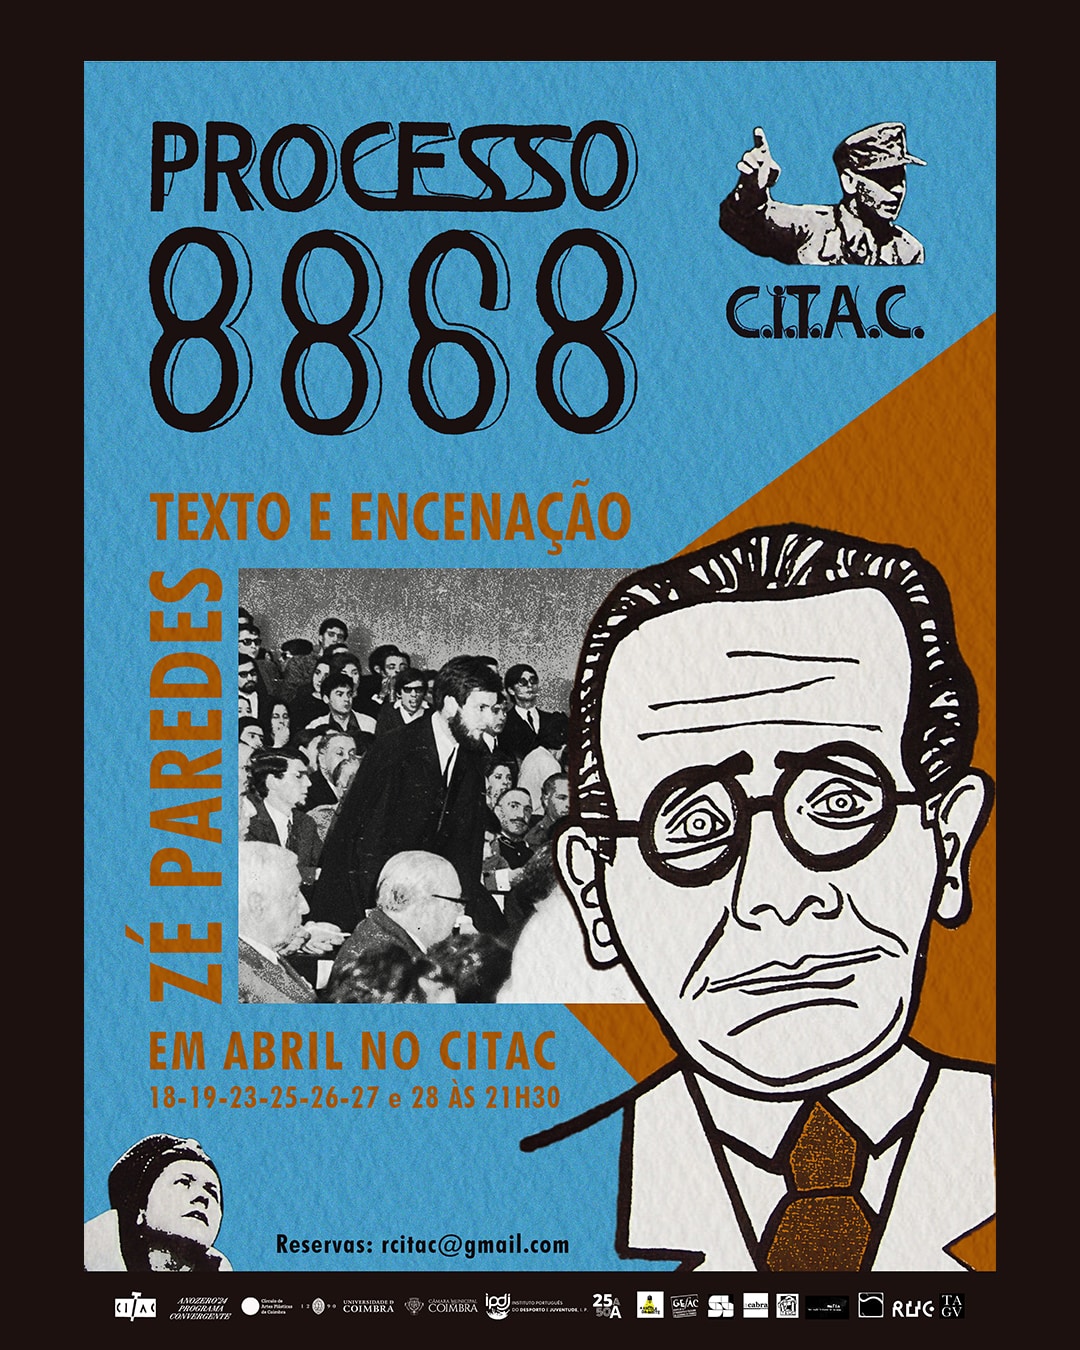 Capa Oficial do Evento PROCESSO 8868, Castelao em Coimbra